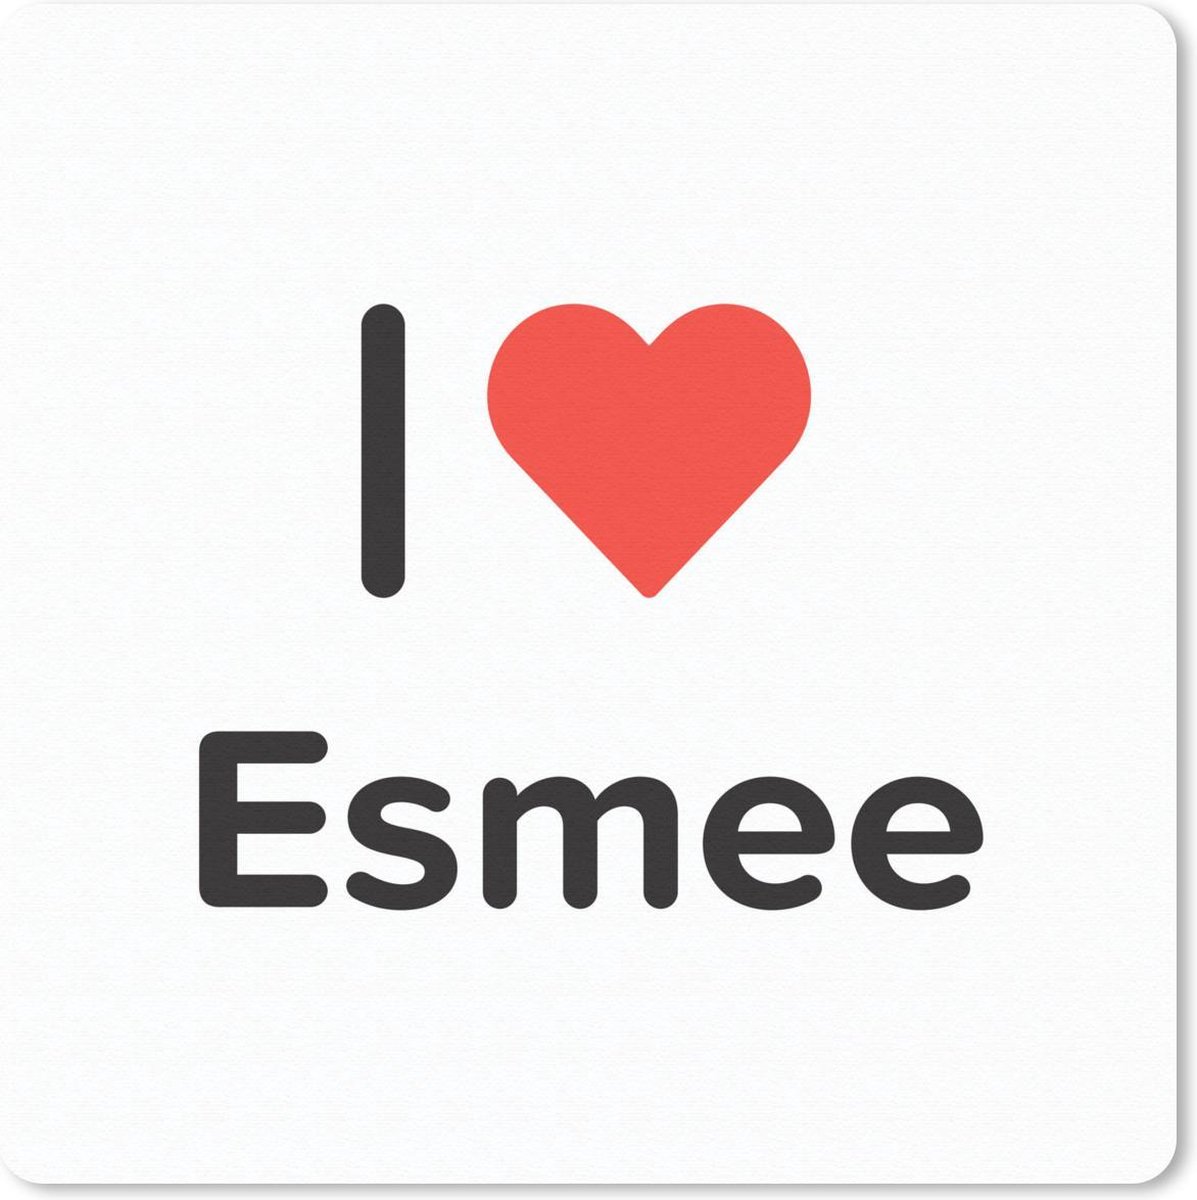 Muismat - Mousepad - I love - Esmee - Meisje - 30x30 cm - Muismatten